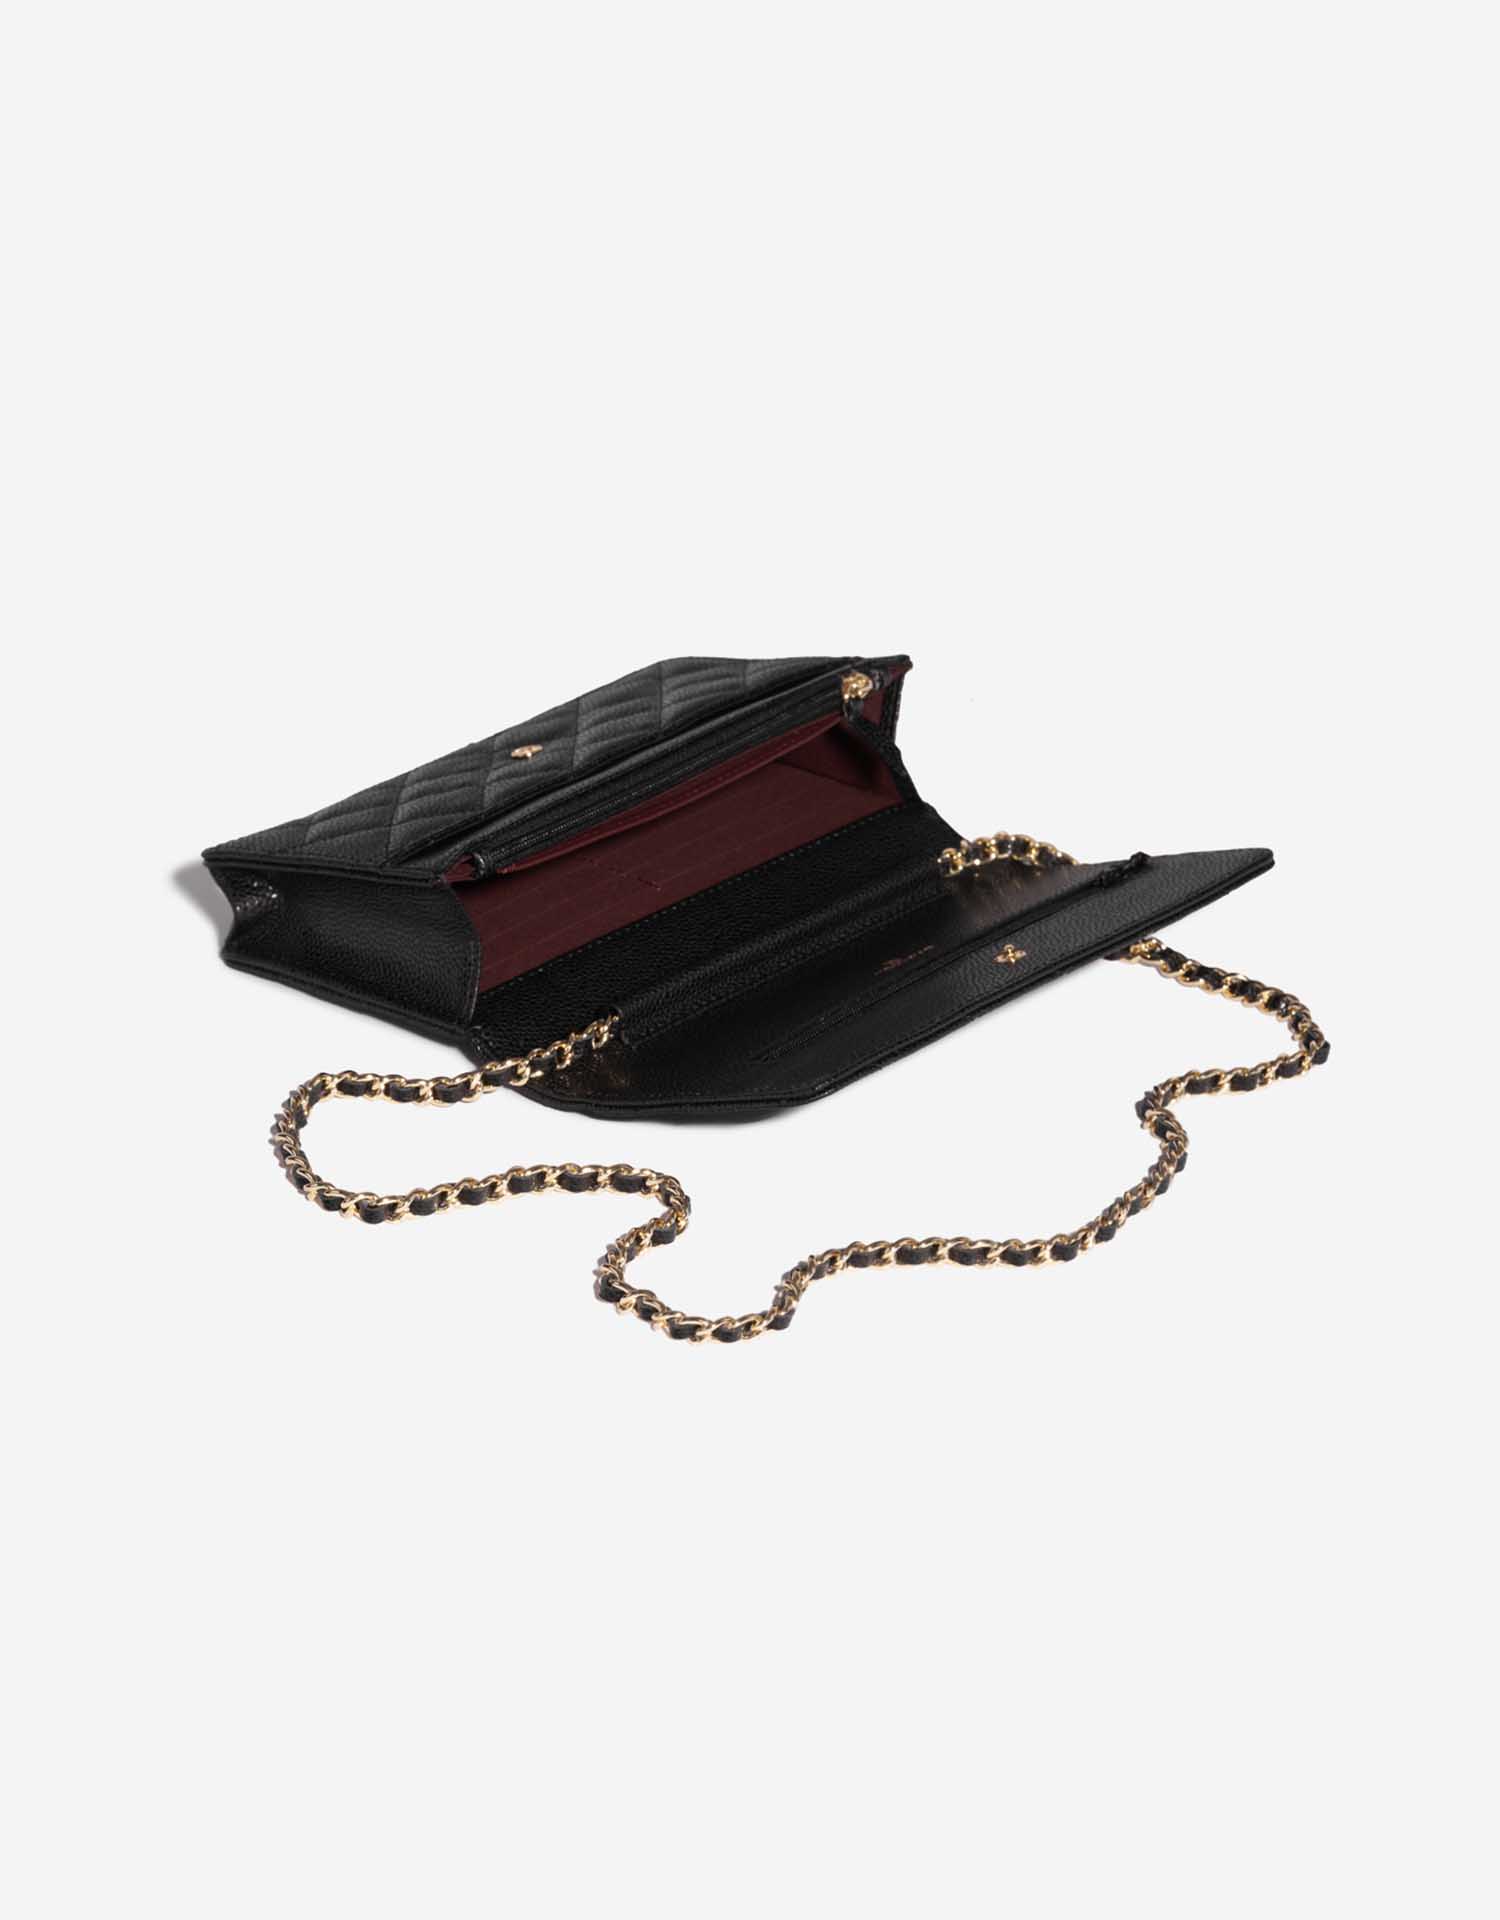 Sac Chanel d'occasion Timeless WOC Caviar Noir Noir Intérieur | Vendez votre sac de créateur sur Saclab.com